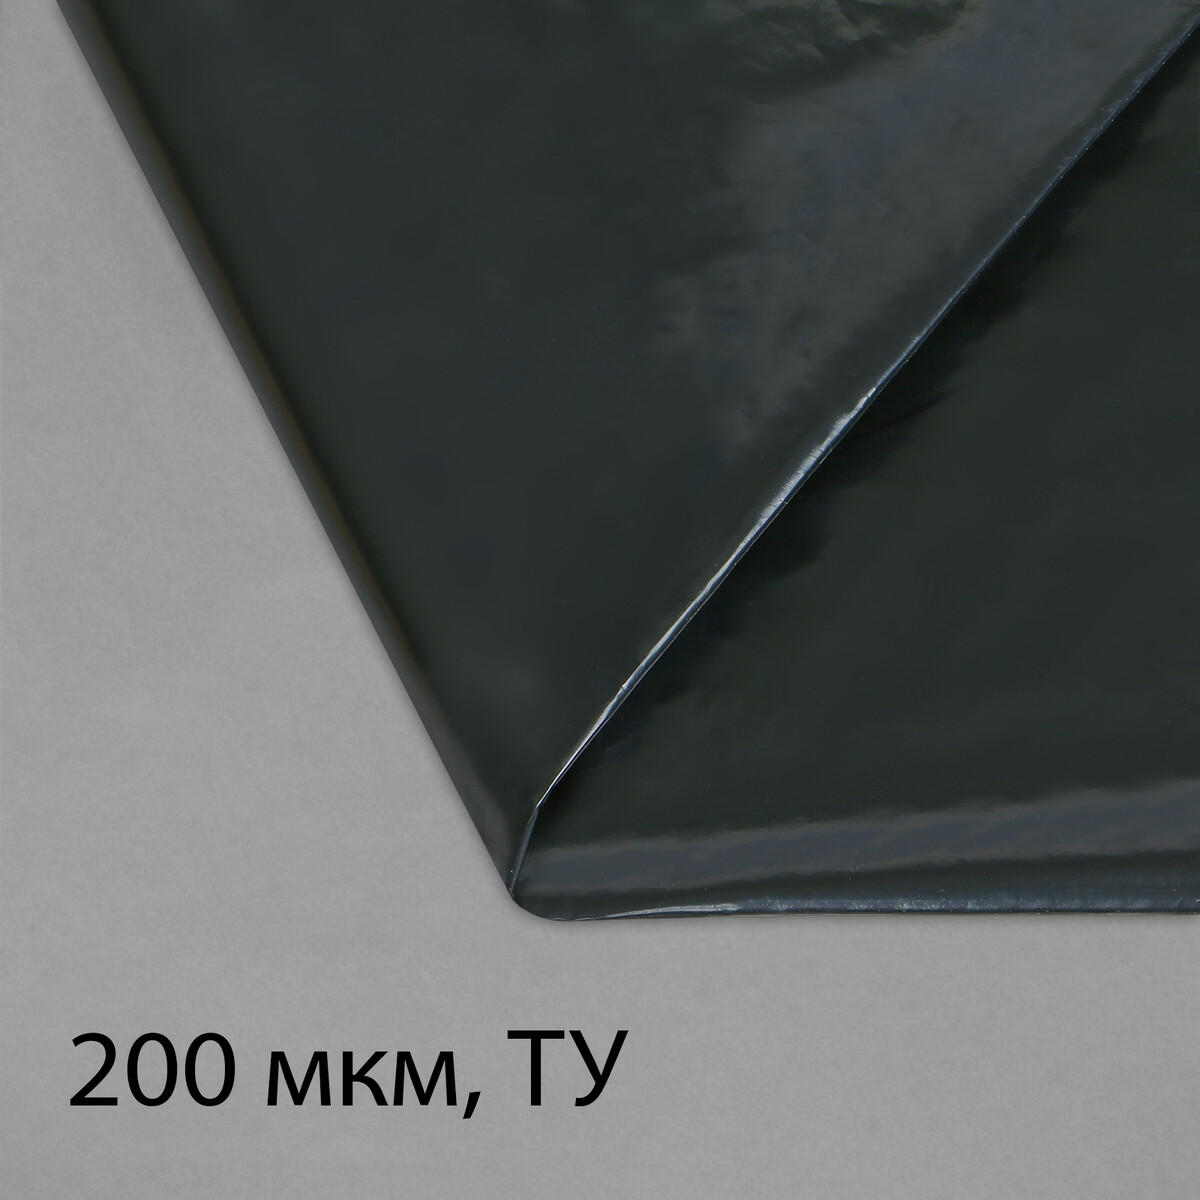 Пленка полиэтиленовая, техническая, толщина 200 мкм, 5 × 3 м, рукав (1,5 м × 2), черная, 2 сорт, эконом 50 % пленка полиэтиленовая техническая 80 мкм черная длина 10 м ширина 3 м рукав 1 5 × 2 м эконом 50%